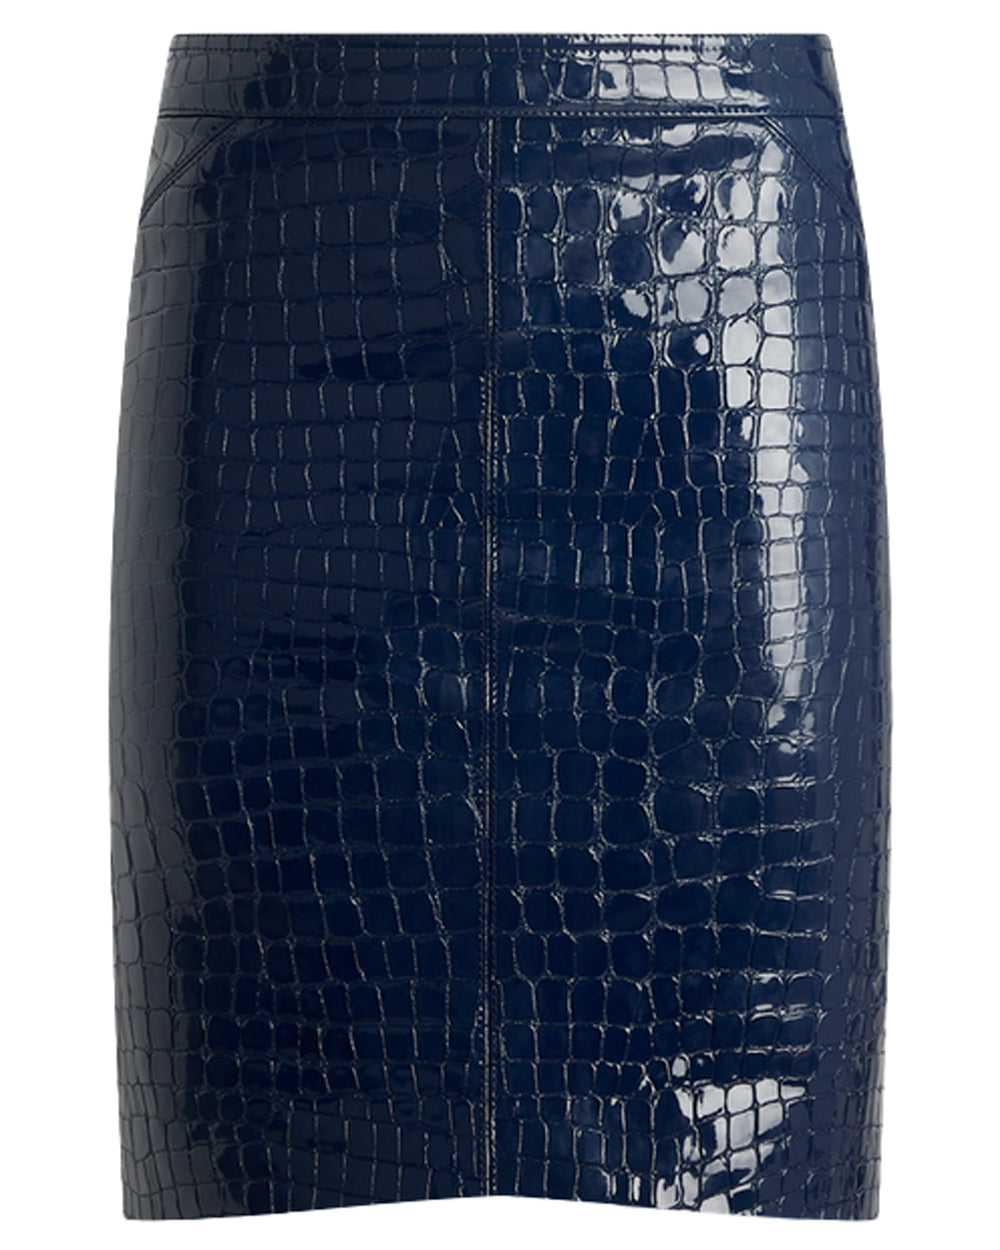 Deep Blue Crocodile Embossed Leather Skirt